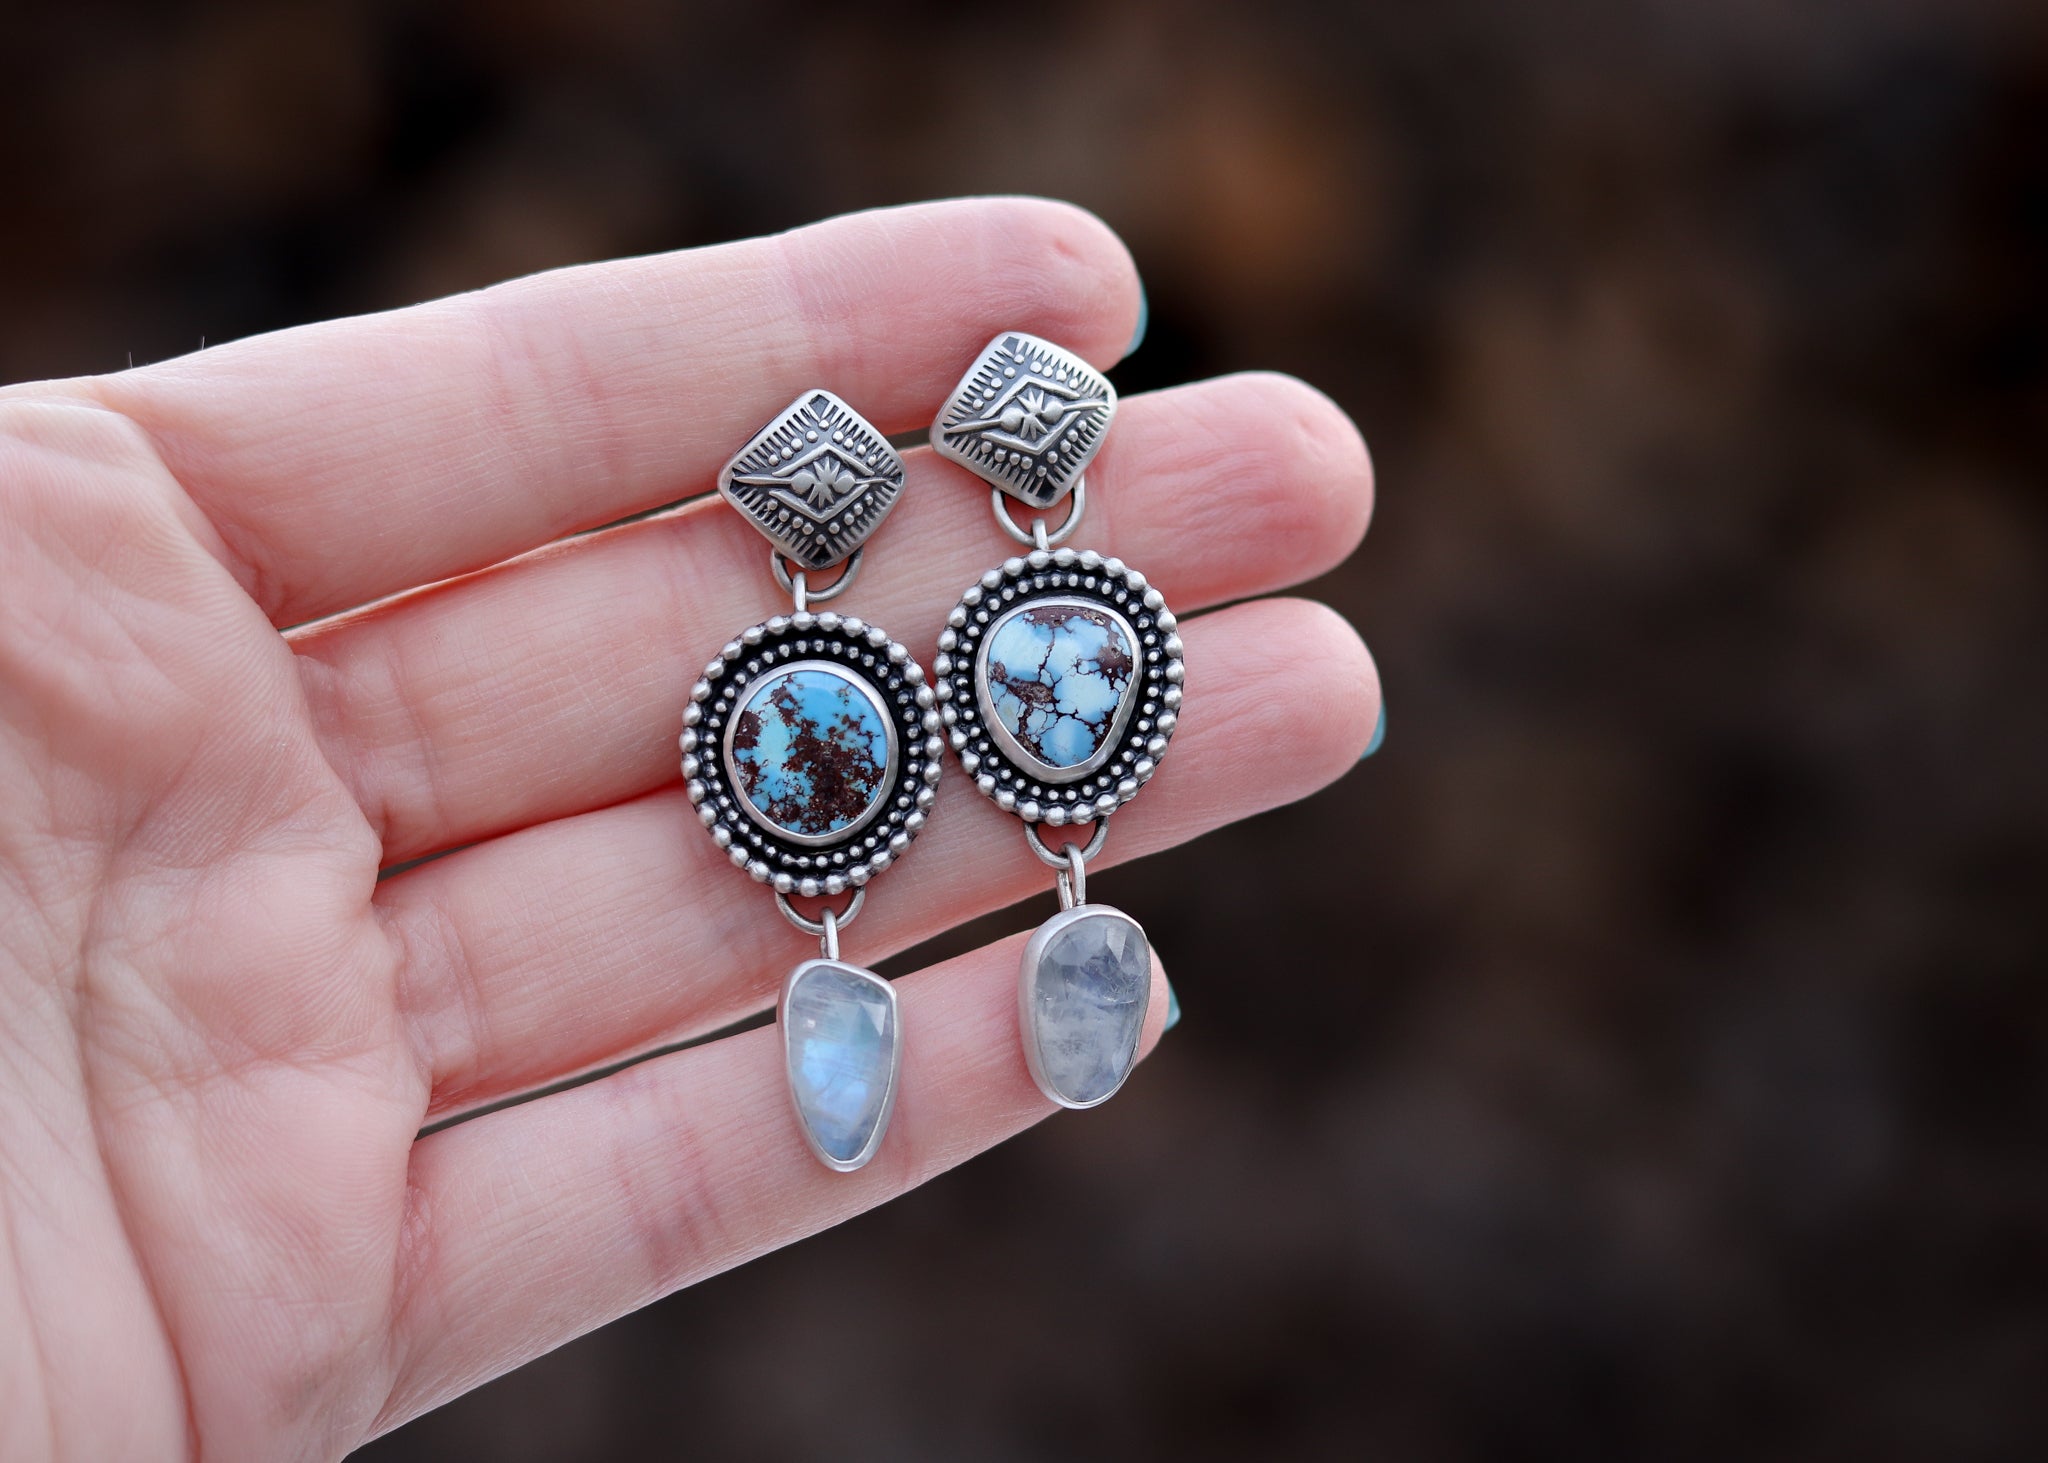 Diamond Burst Earrings - Lavender Turquoise + Moonstone